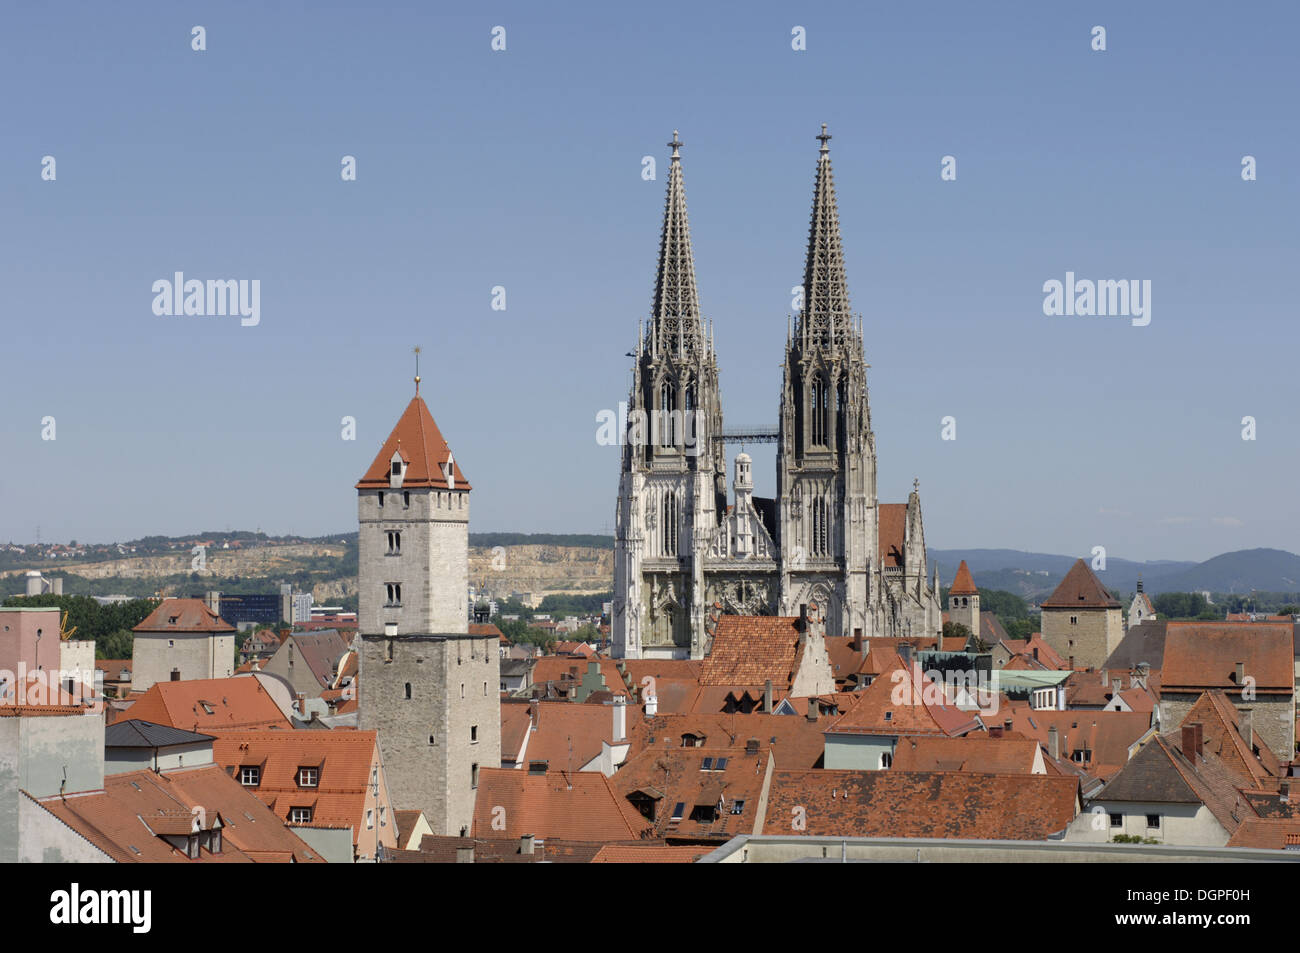 El horizonte de la ciudad alemana de Regensburg Foto de stock